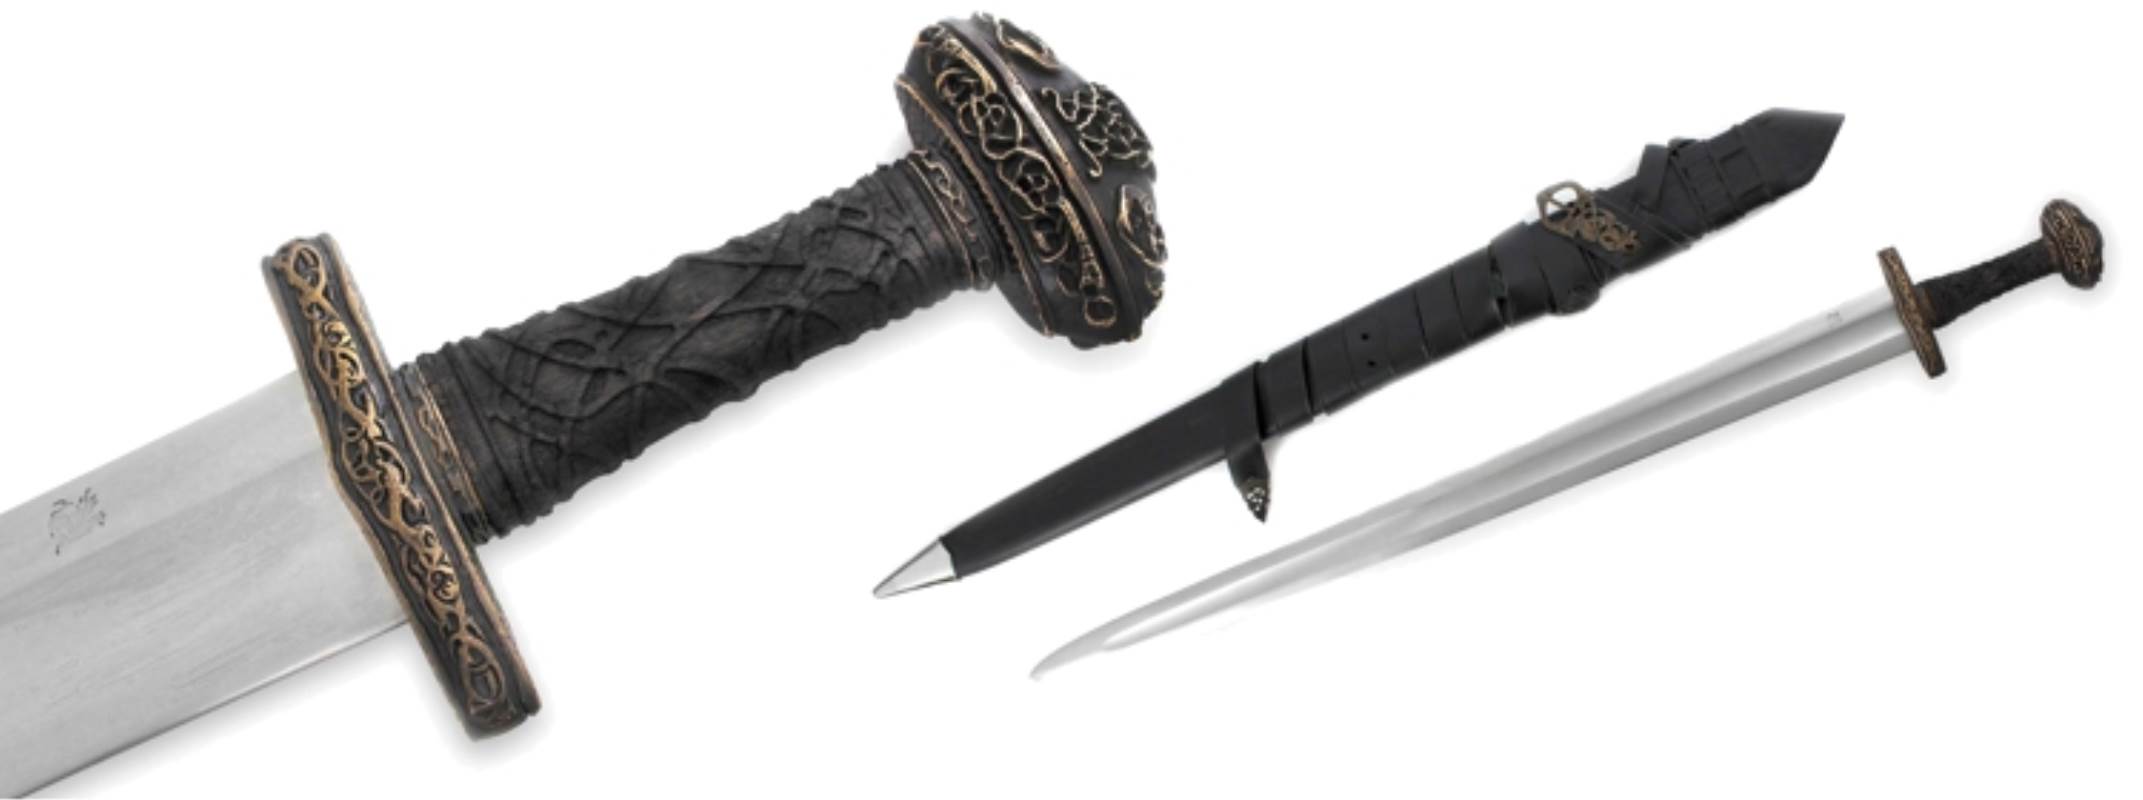 The Einar Viking Sword